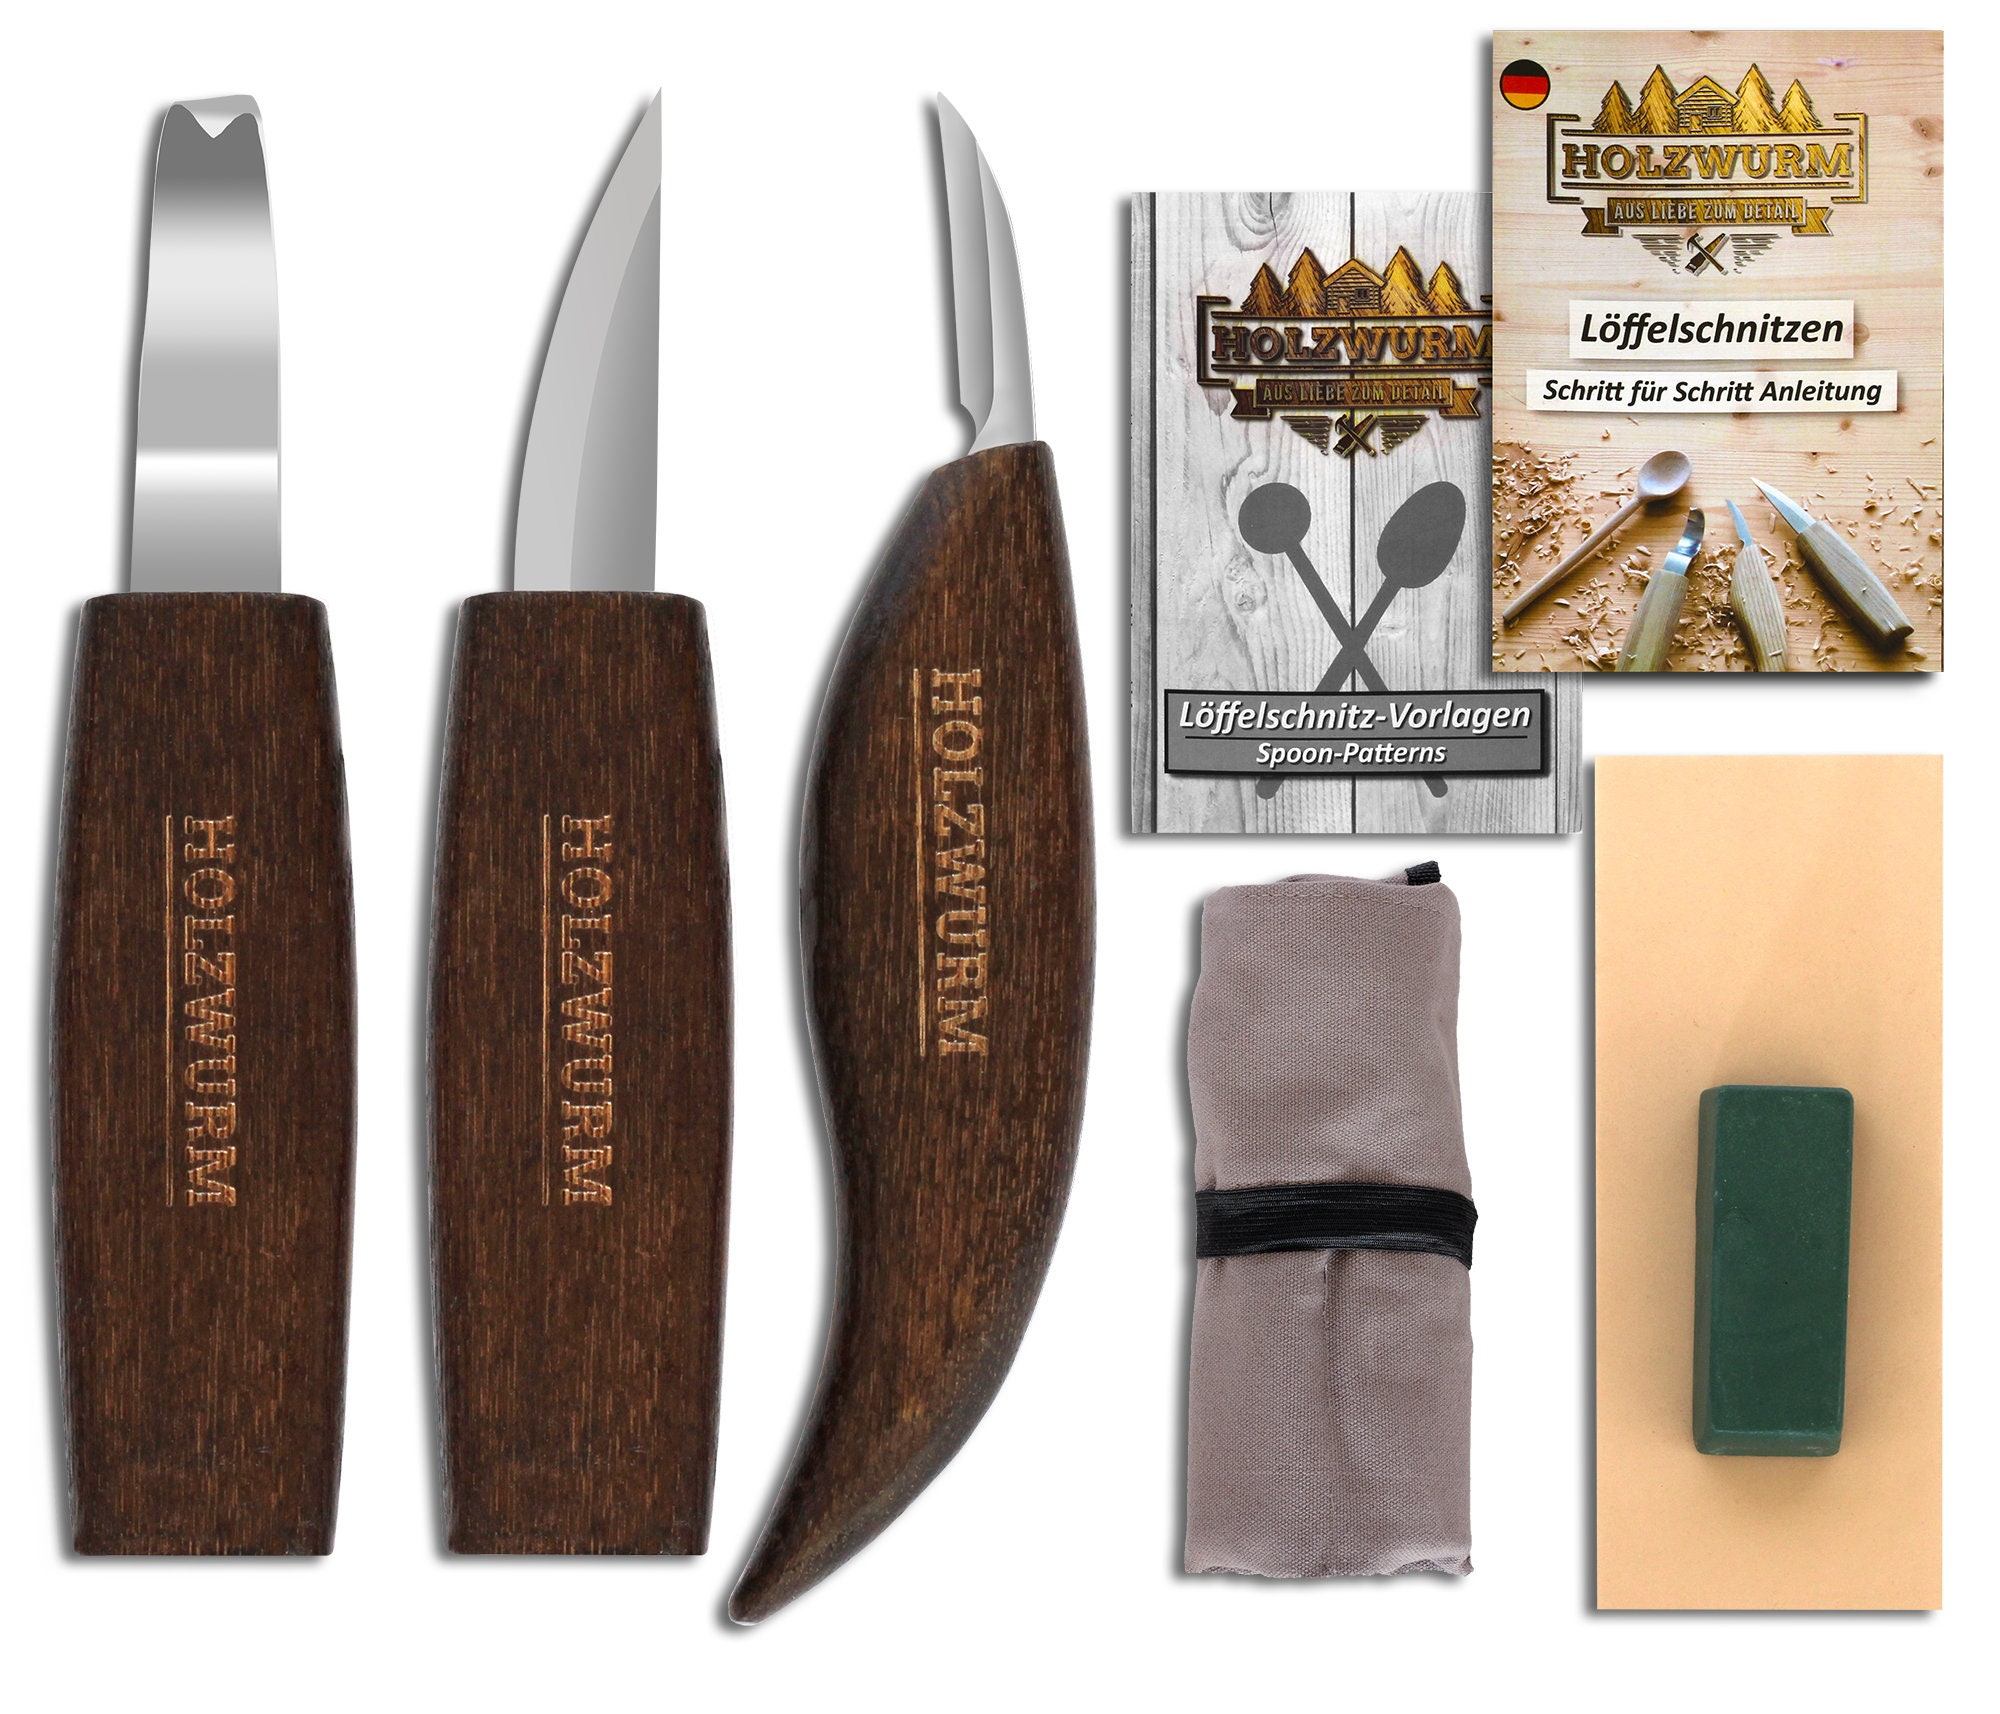 Wood Whittling Kit For Beginners Razor Sharp Wood Carving Knife